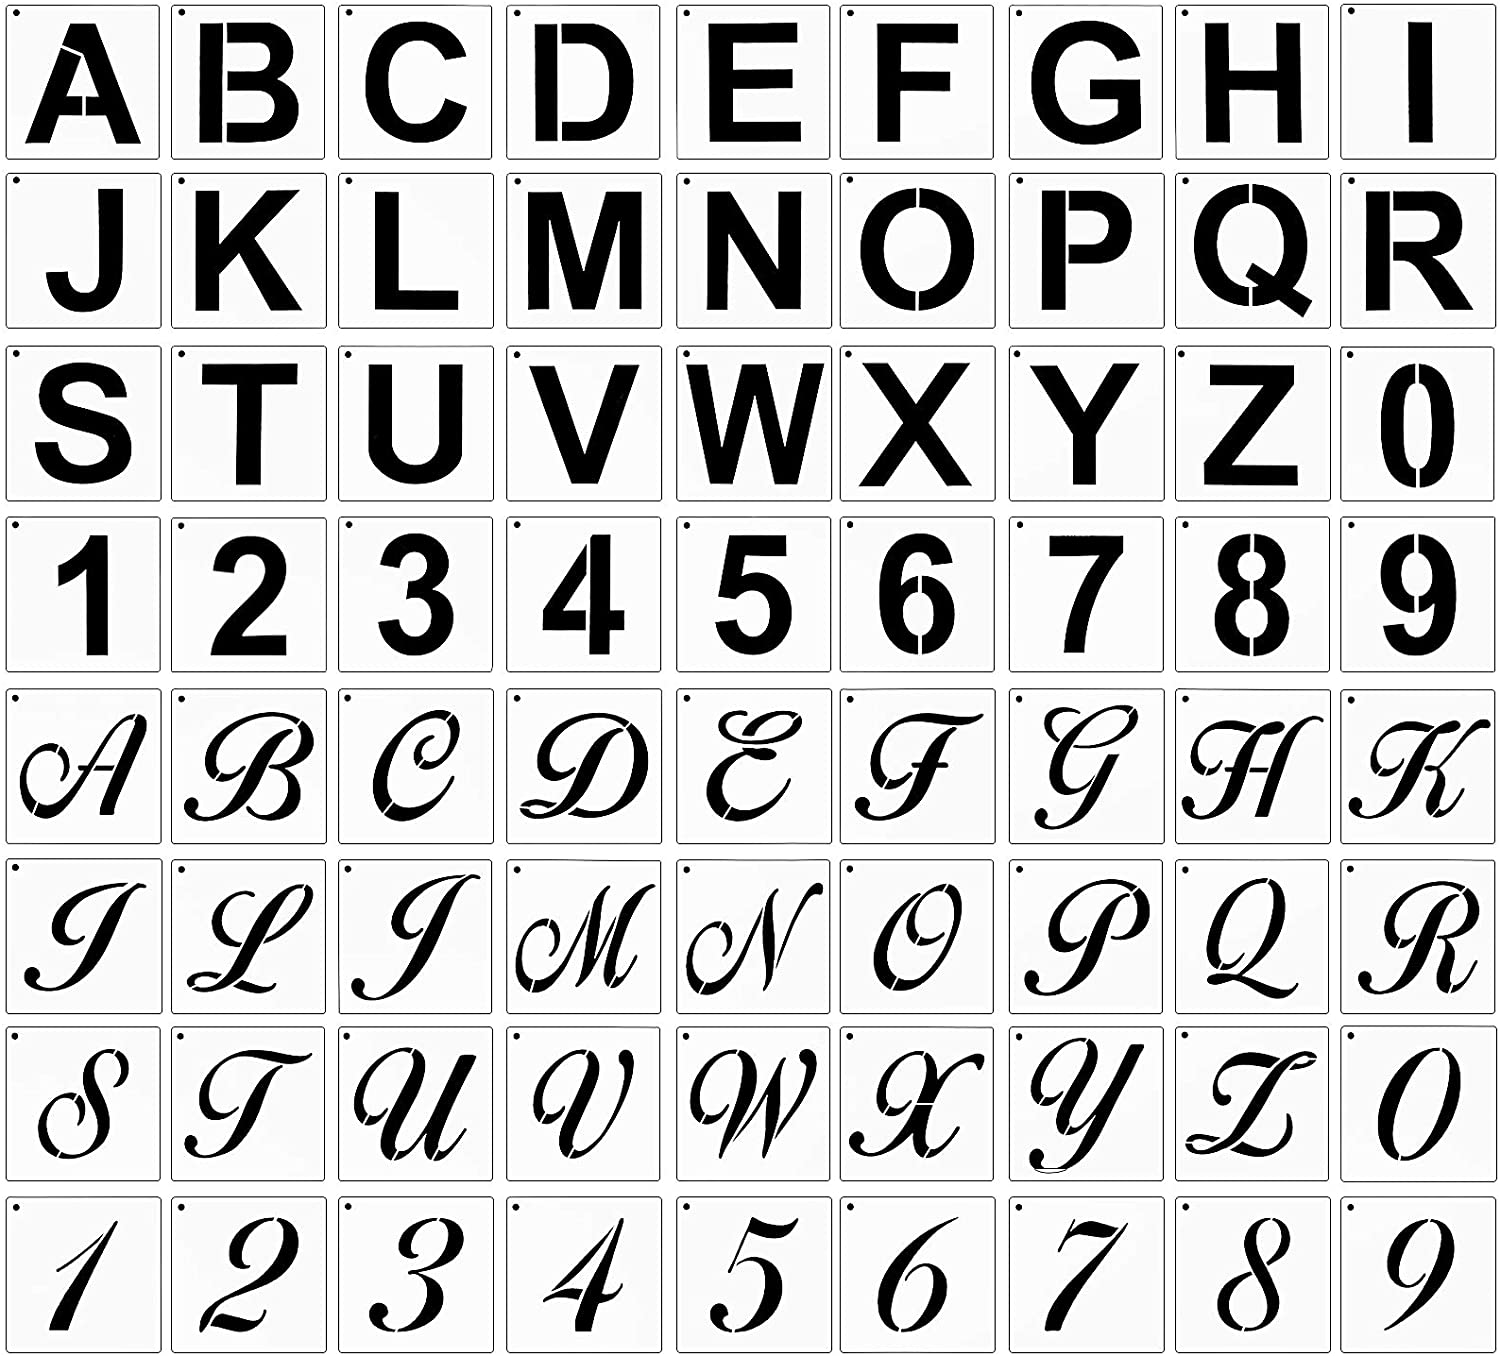 42 plantillas de plantillas de letras y números, plantillas de alfabeto  reutilizables y lavable Abanopi Plantilla